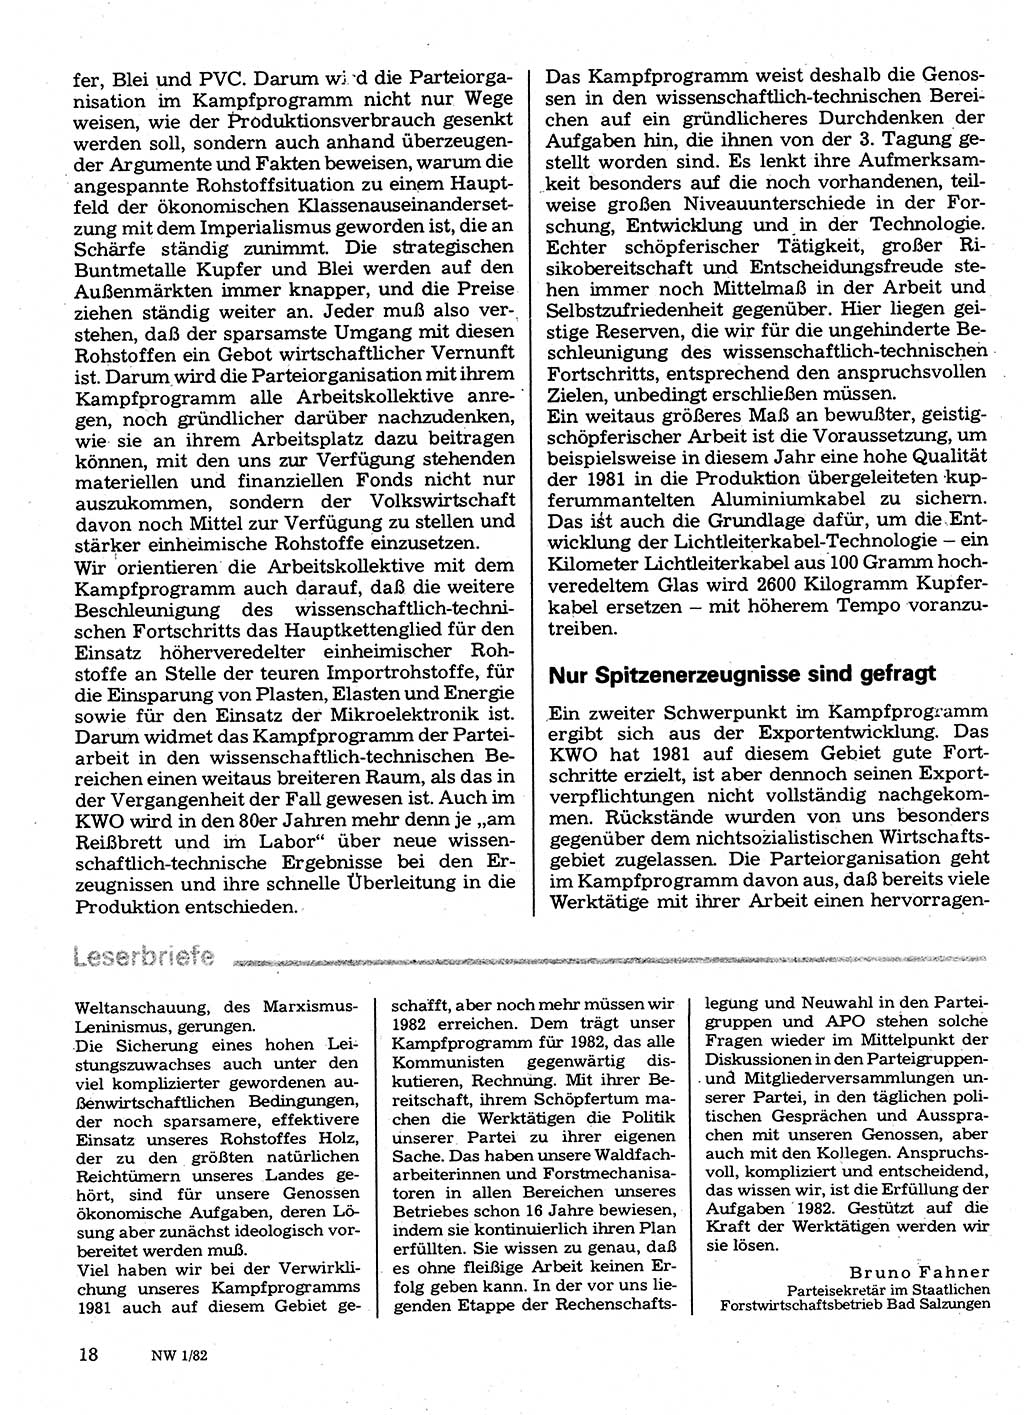 Neuer Weg (NW), Organ des Zentralkomitees (ZK) der SED (Sozialistische Einheitspartei Deutschlands) für Fragen des Parteilebens, 37. Jahrgang [Deutsche Demokratische Republik (DDR)] 1982, Seite 18 (NW ZK SED DDR 1982, S. 18)